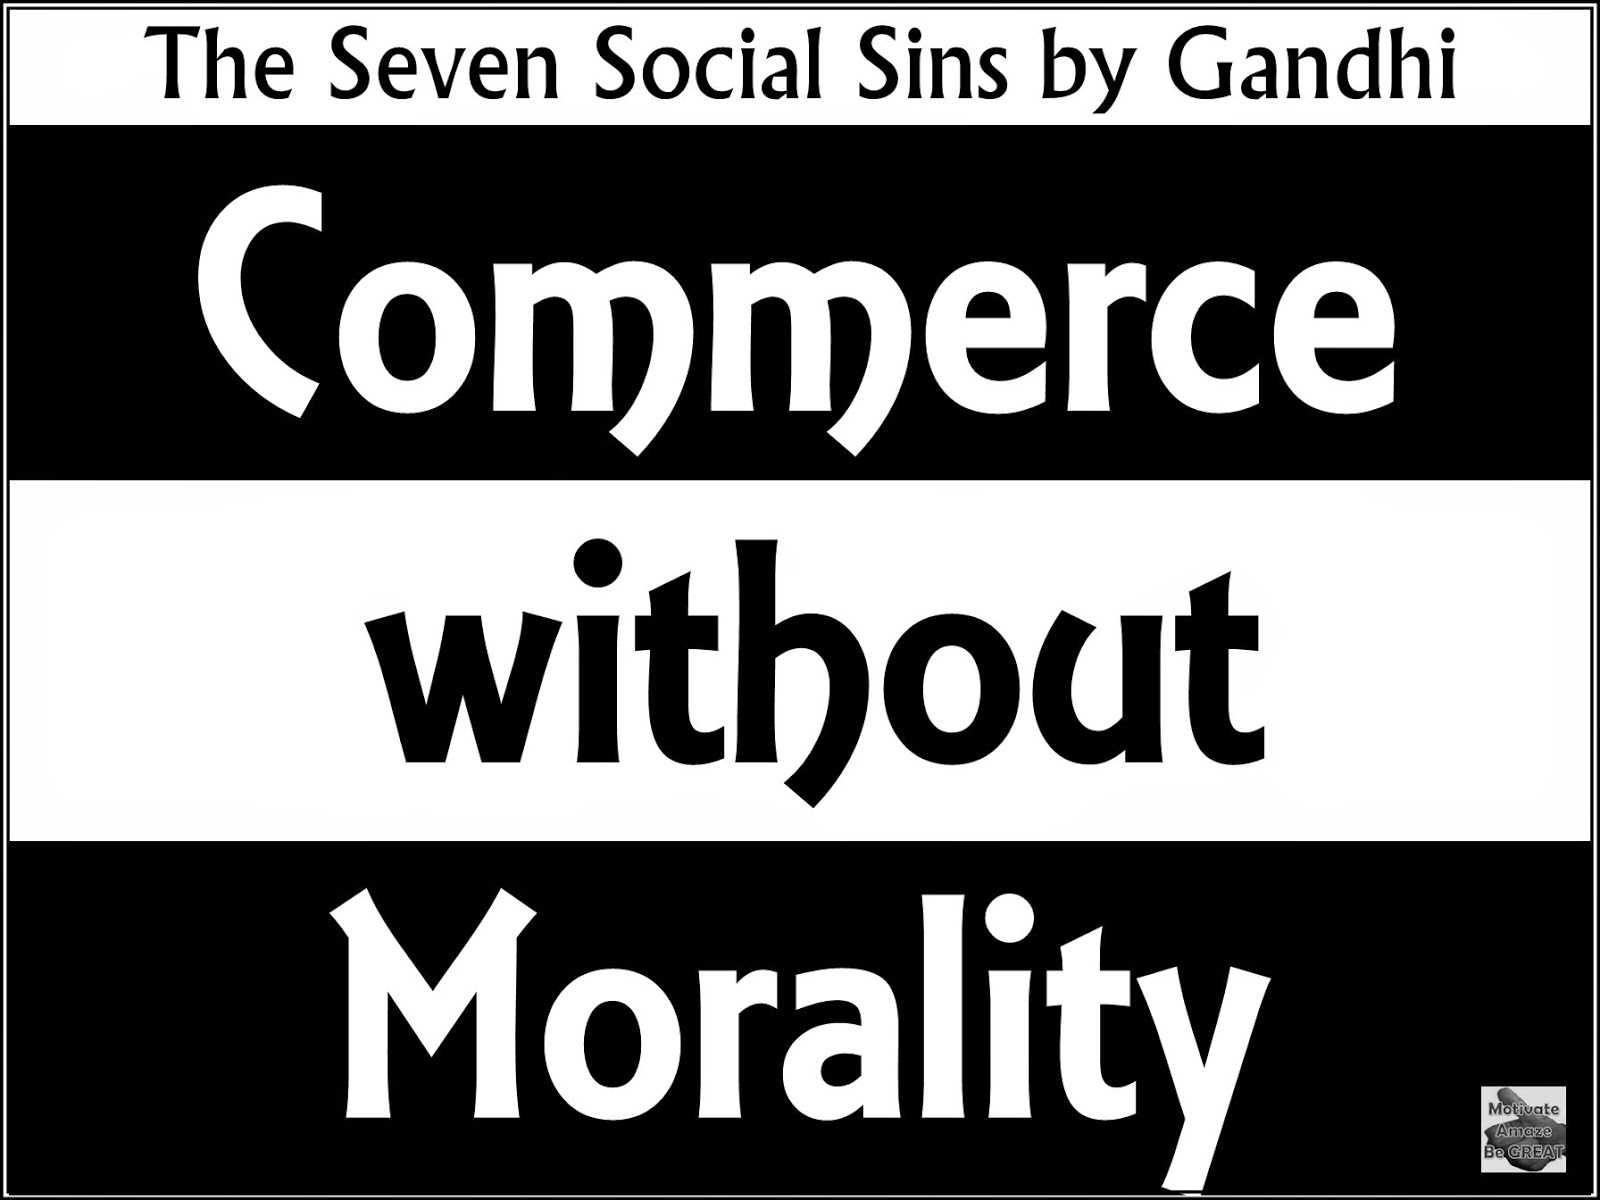 Seven, social, sins, Gandhi, inspirational, motivation, commerce, morality